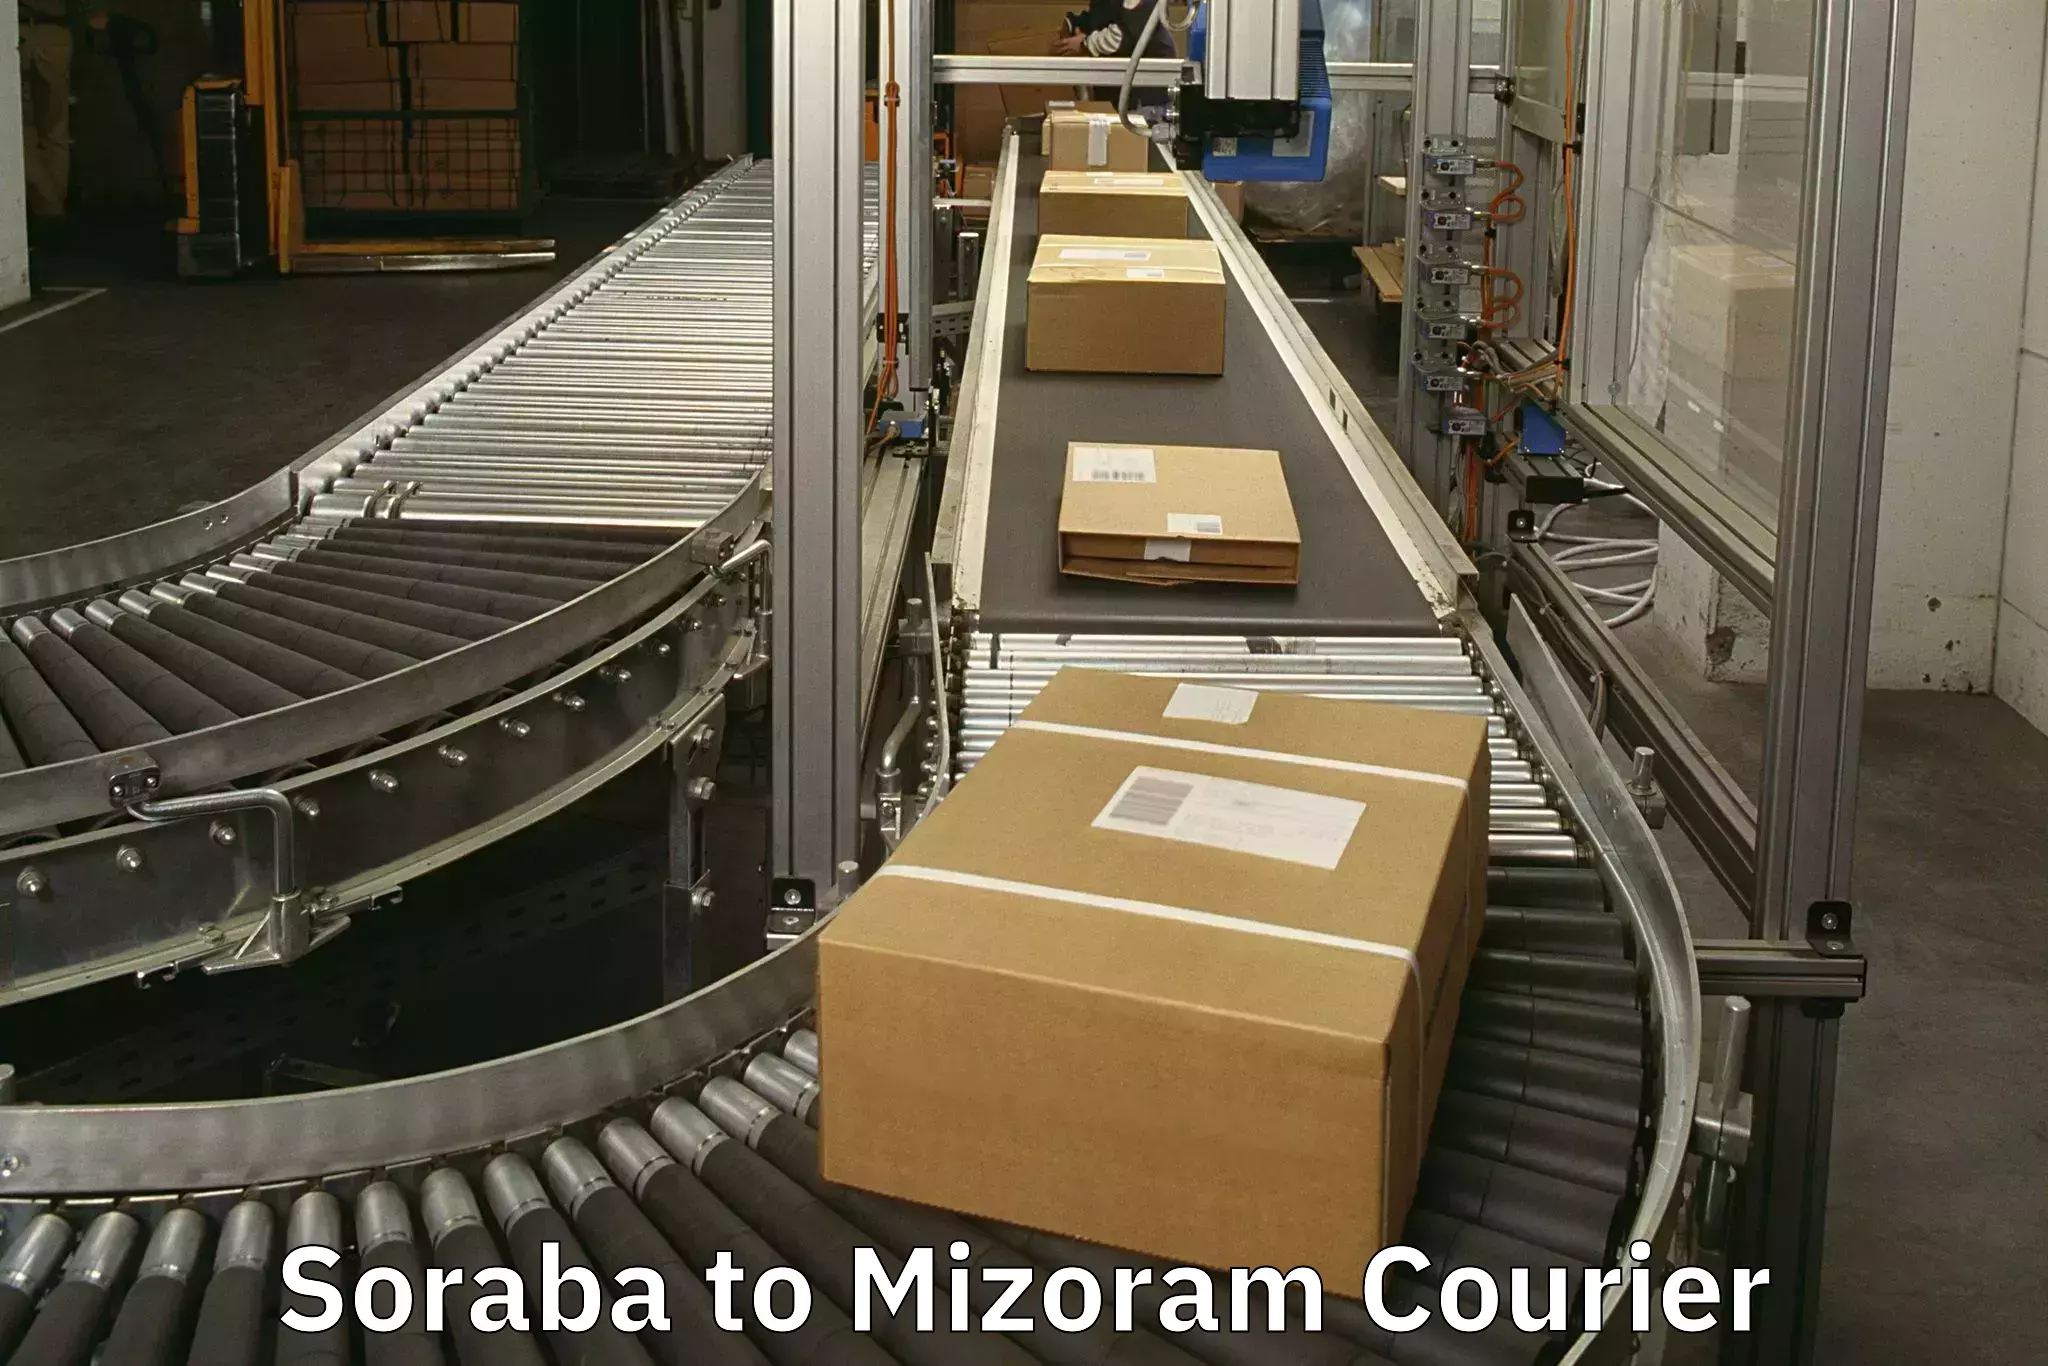 Luggage transit service Soraba to Mizoram